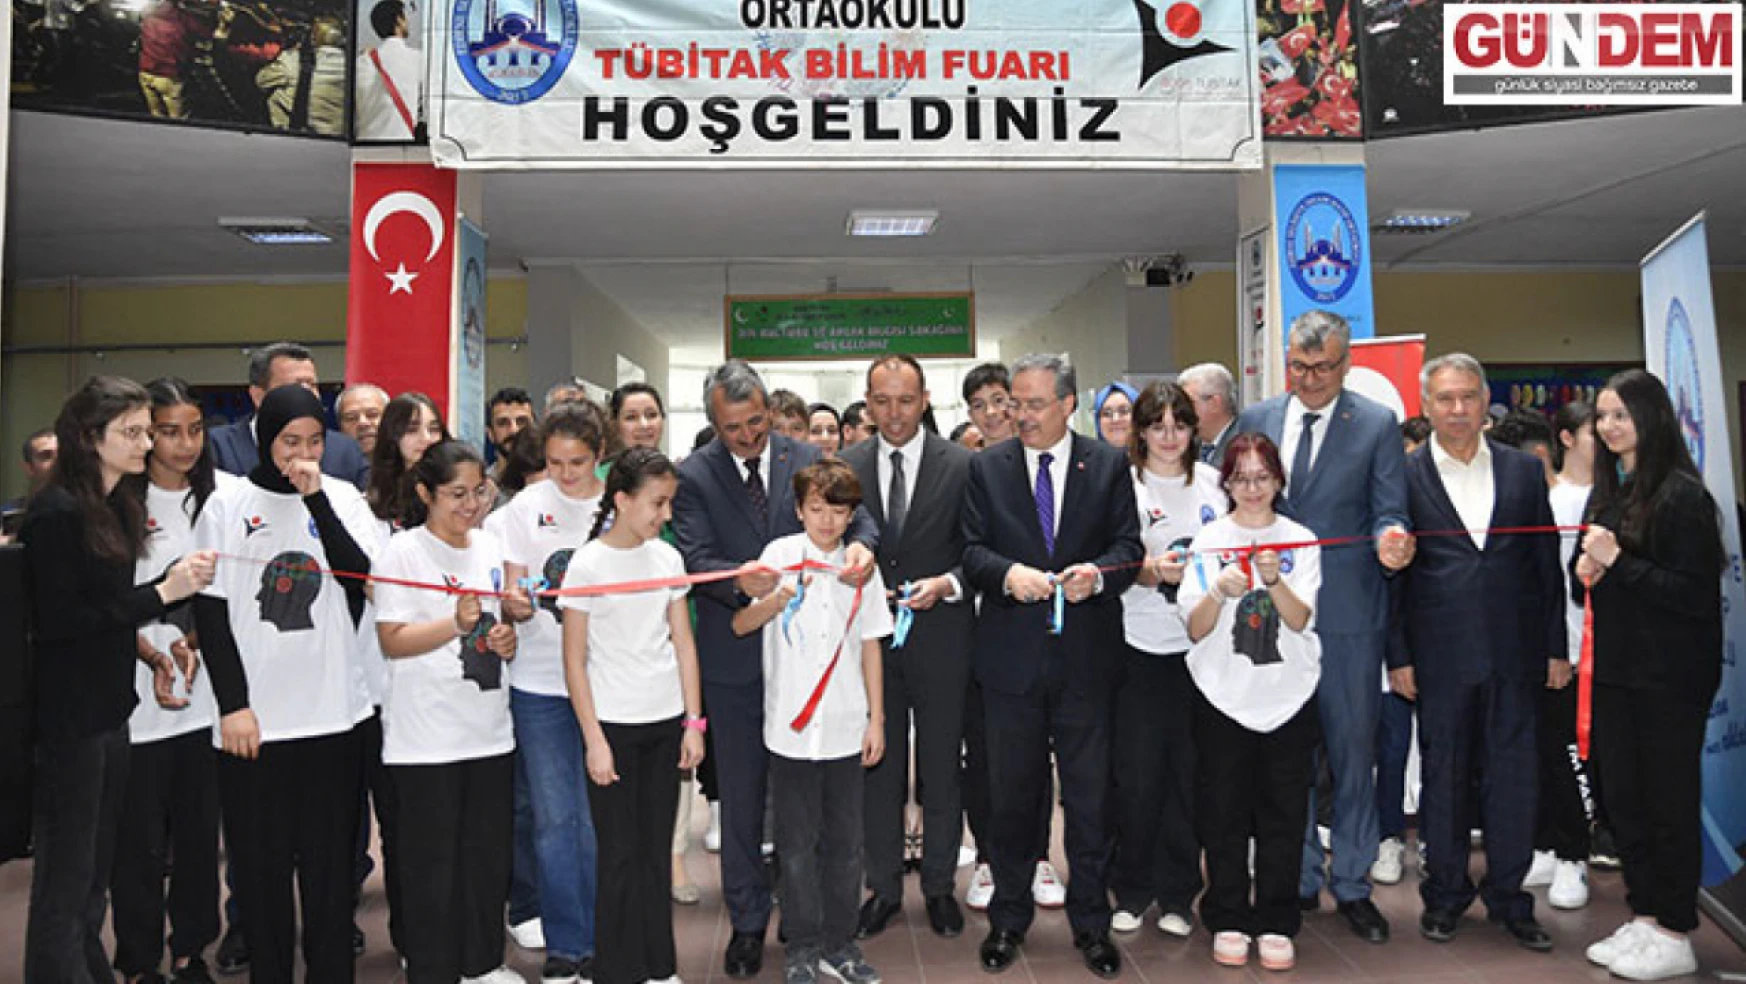 Selimiye İmam Hatip Ortaokulu'nda 4006 TÜBİTAK Bilim Fuarı açıldı